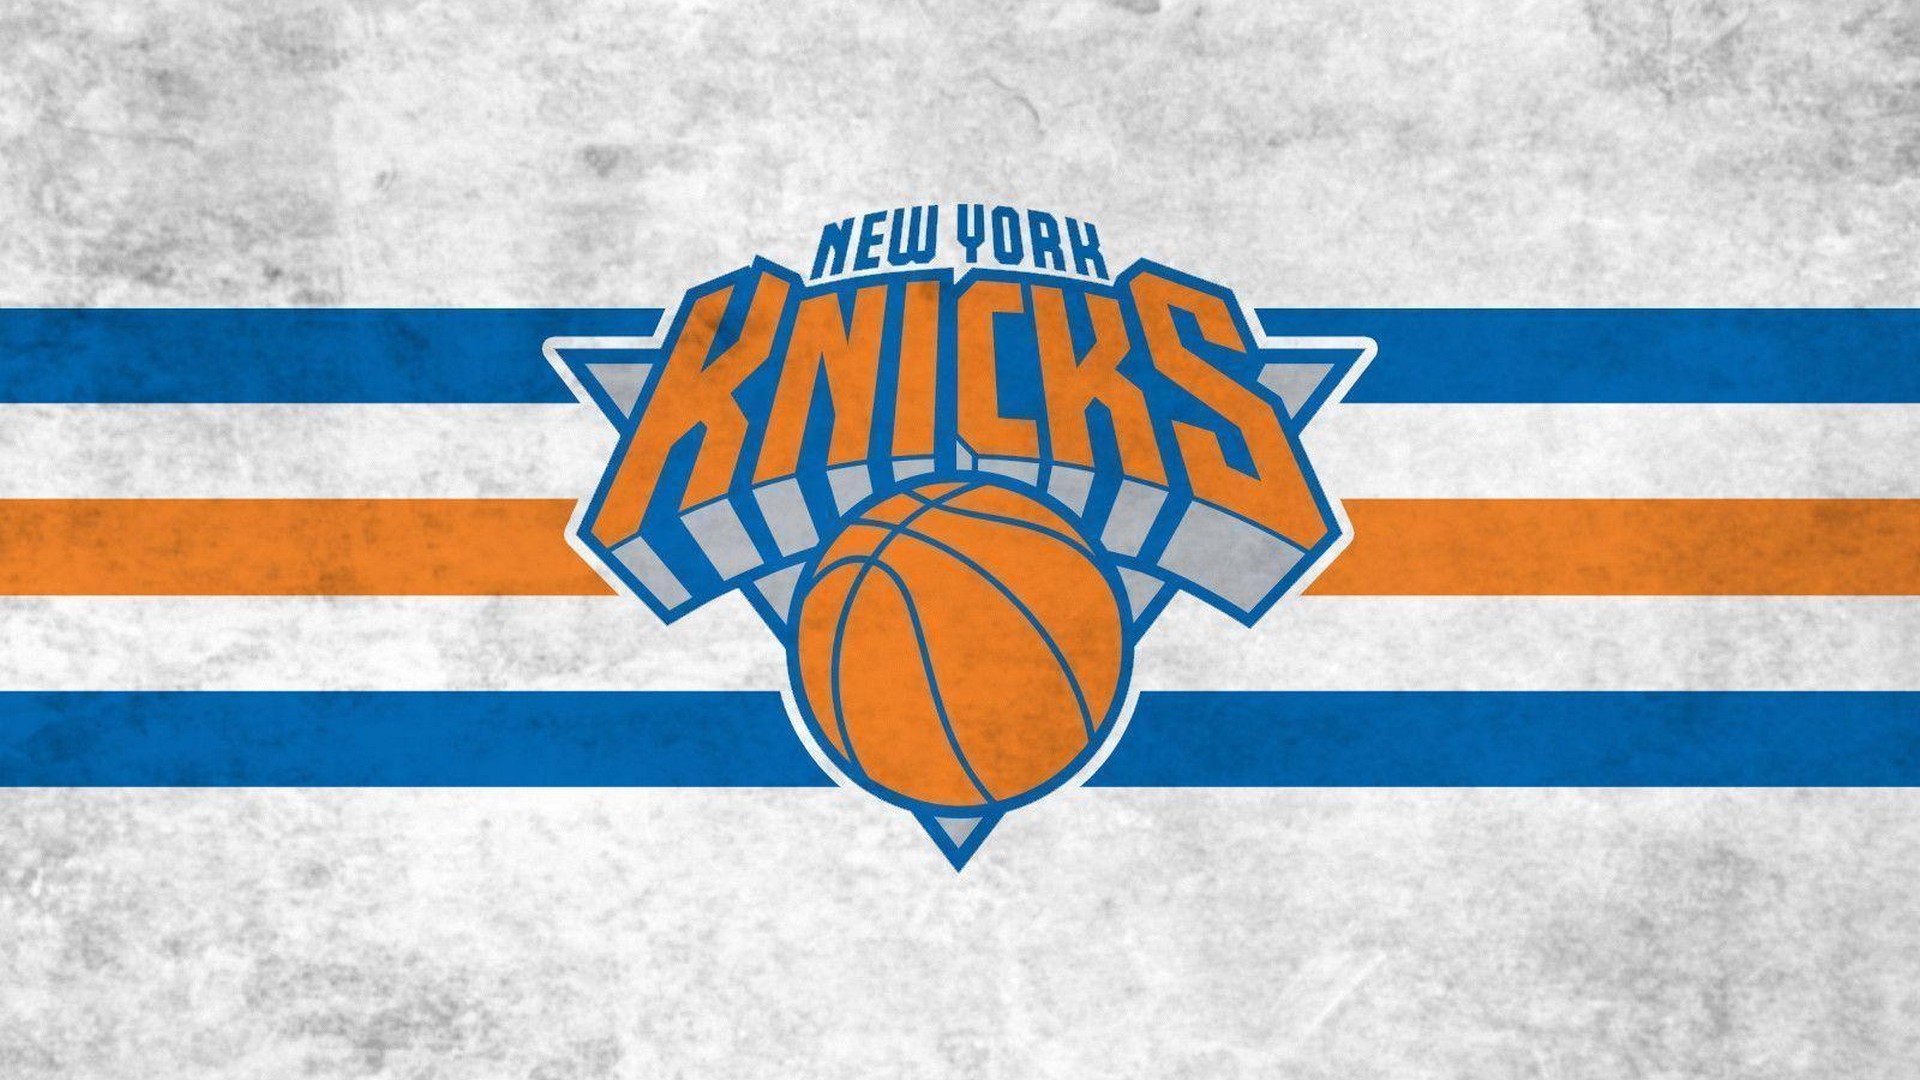 New York Knicks wallpaper